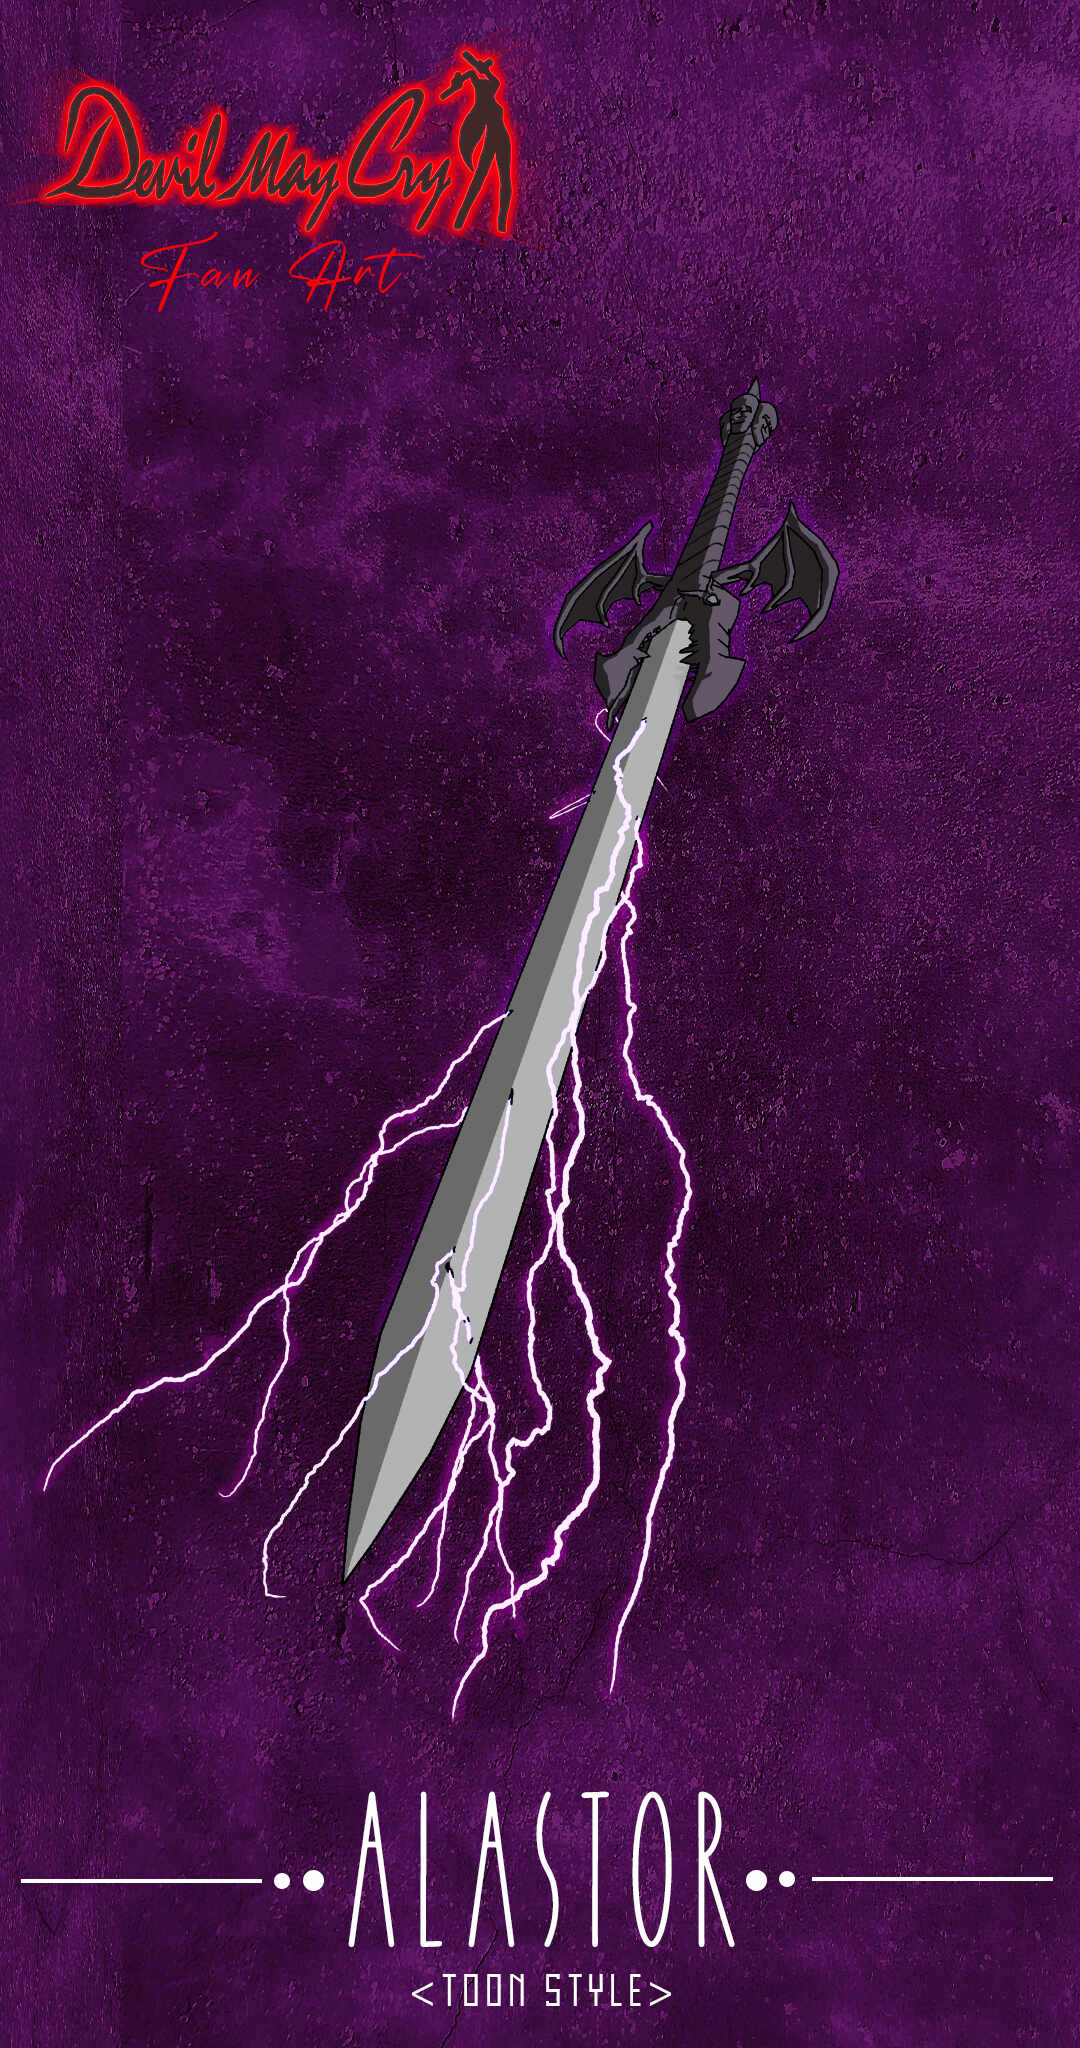 Sword of The Stranger by mrdectol on DeviantArt